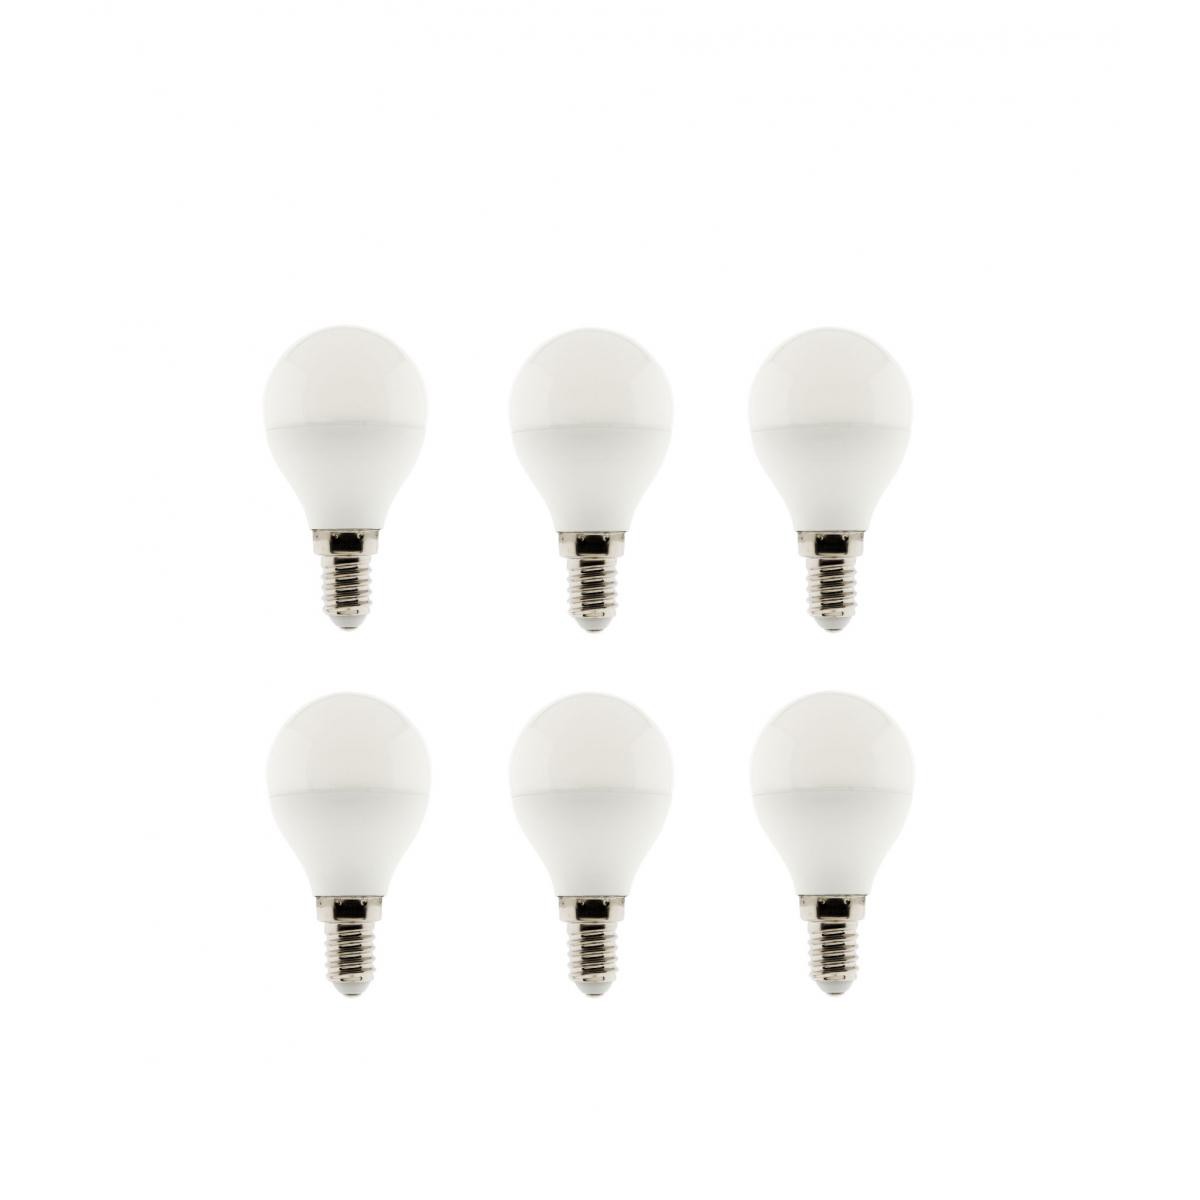 Elexity - Lot de 6 Ampoules LED Sphérique 5W E14 400lm 6500K - Ampoules LED